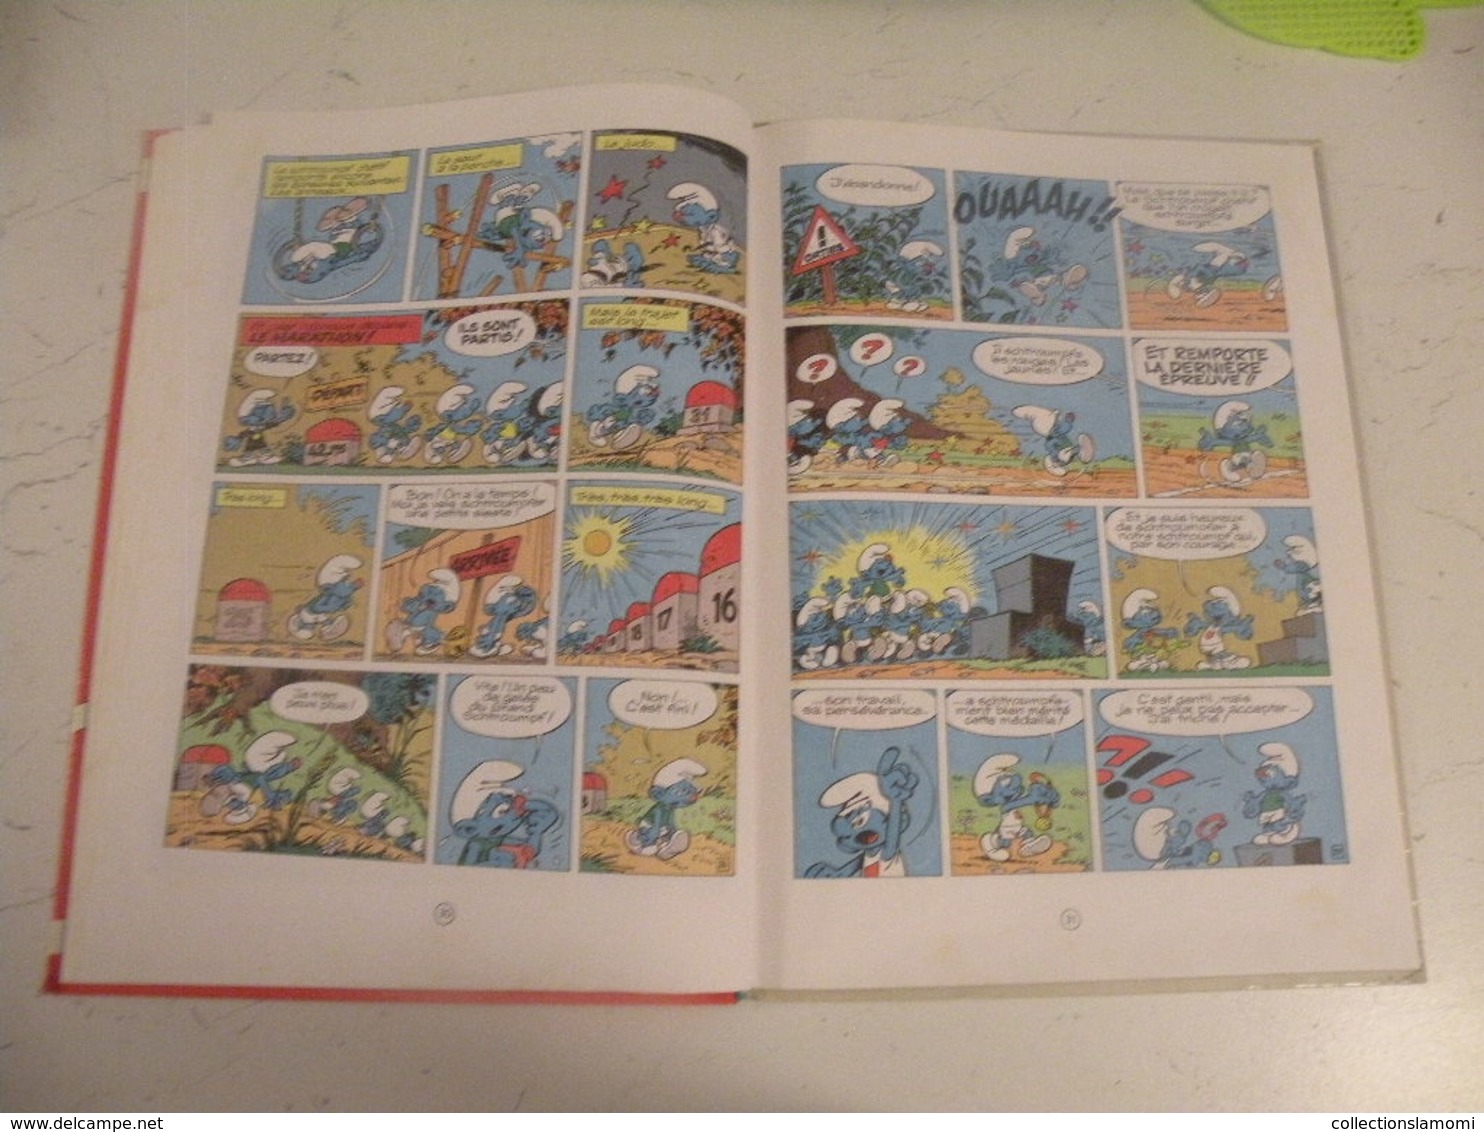 Les Schtroumpfs Olympiques - 3 histoires de Schtroumpfs par Peyo - 48 pages 1983.